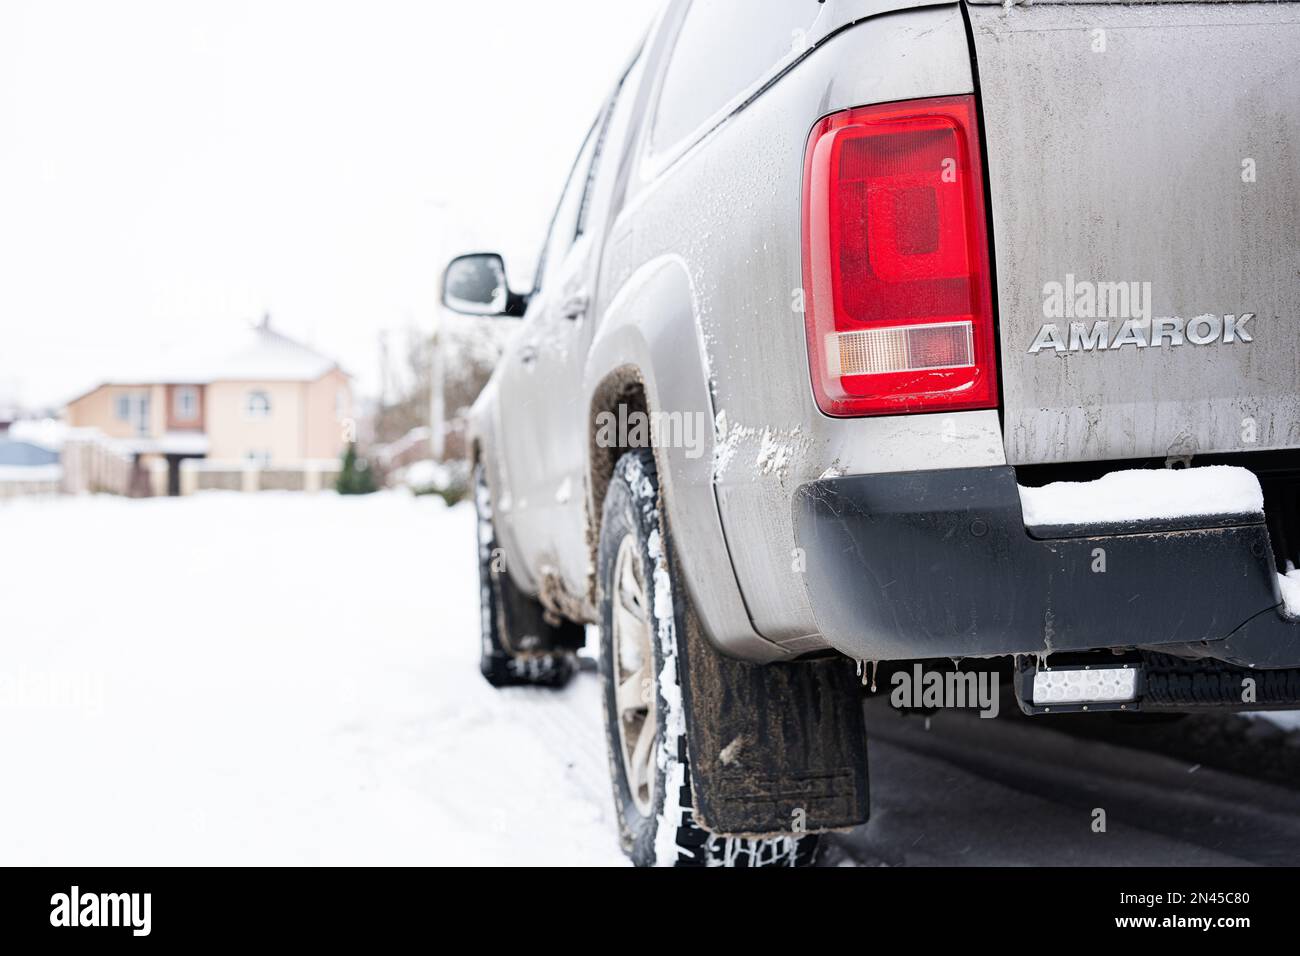 Ternopil, Ukraine - 27 janvier 2023: Dos de Volkswagen gris Amarok V6 TDI en hiver Banque D'Images